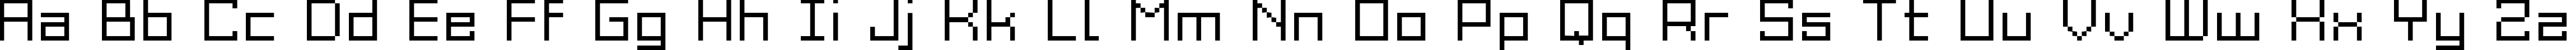 Пример написания английского алфавита шрифтом Grixel Acme 9 Regular Xtnd